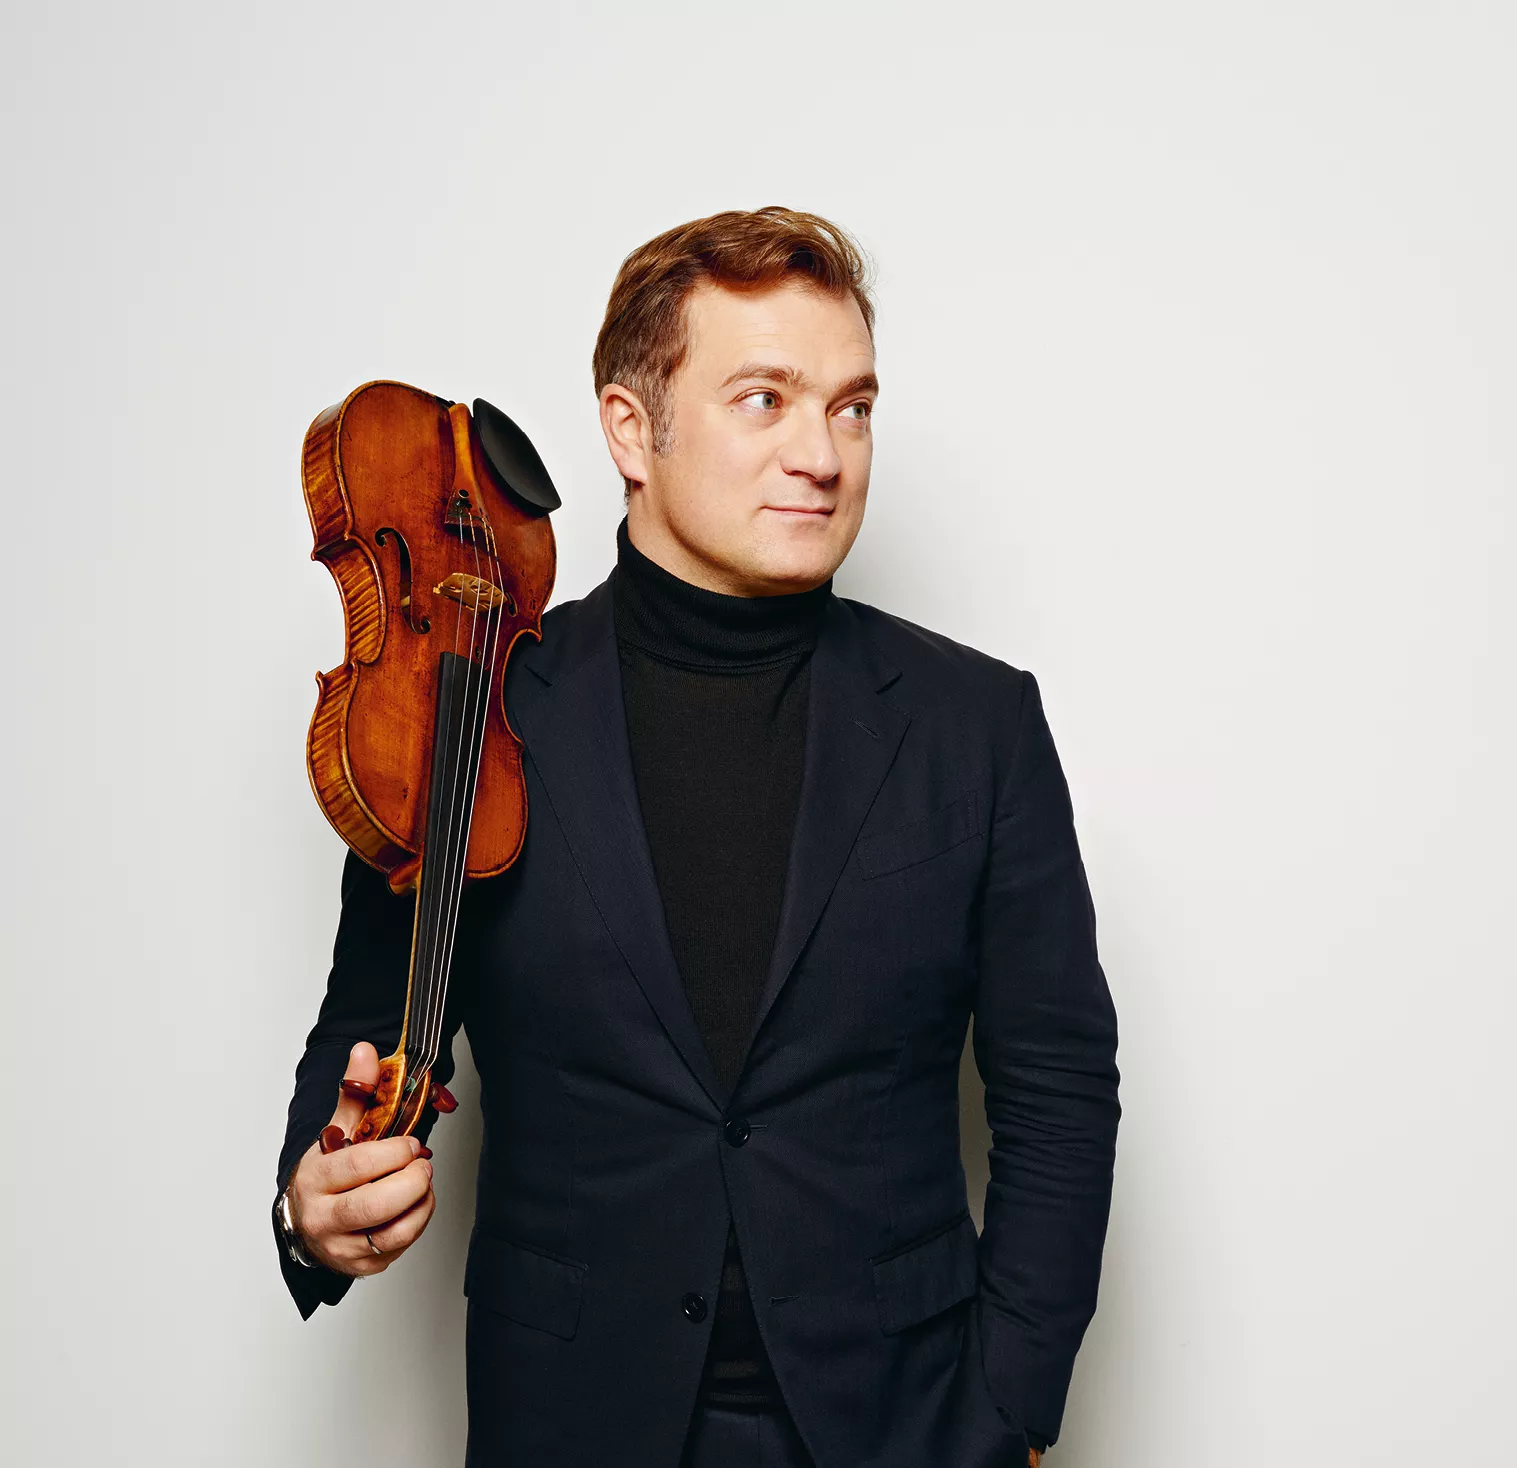 « La Suisse est un havre de paix, propice à la création »: avec le violoniste Renaud Capuçon